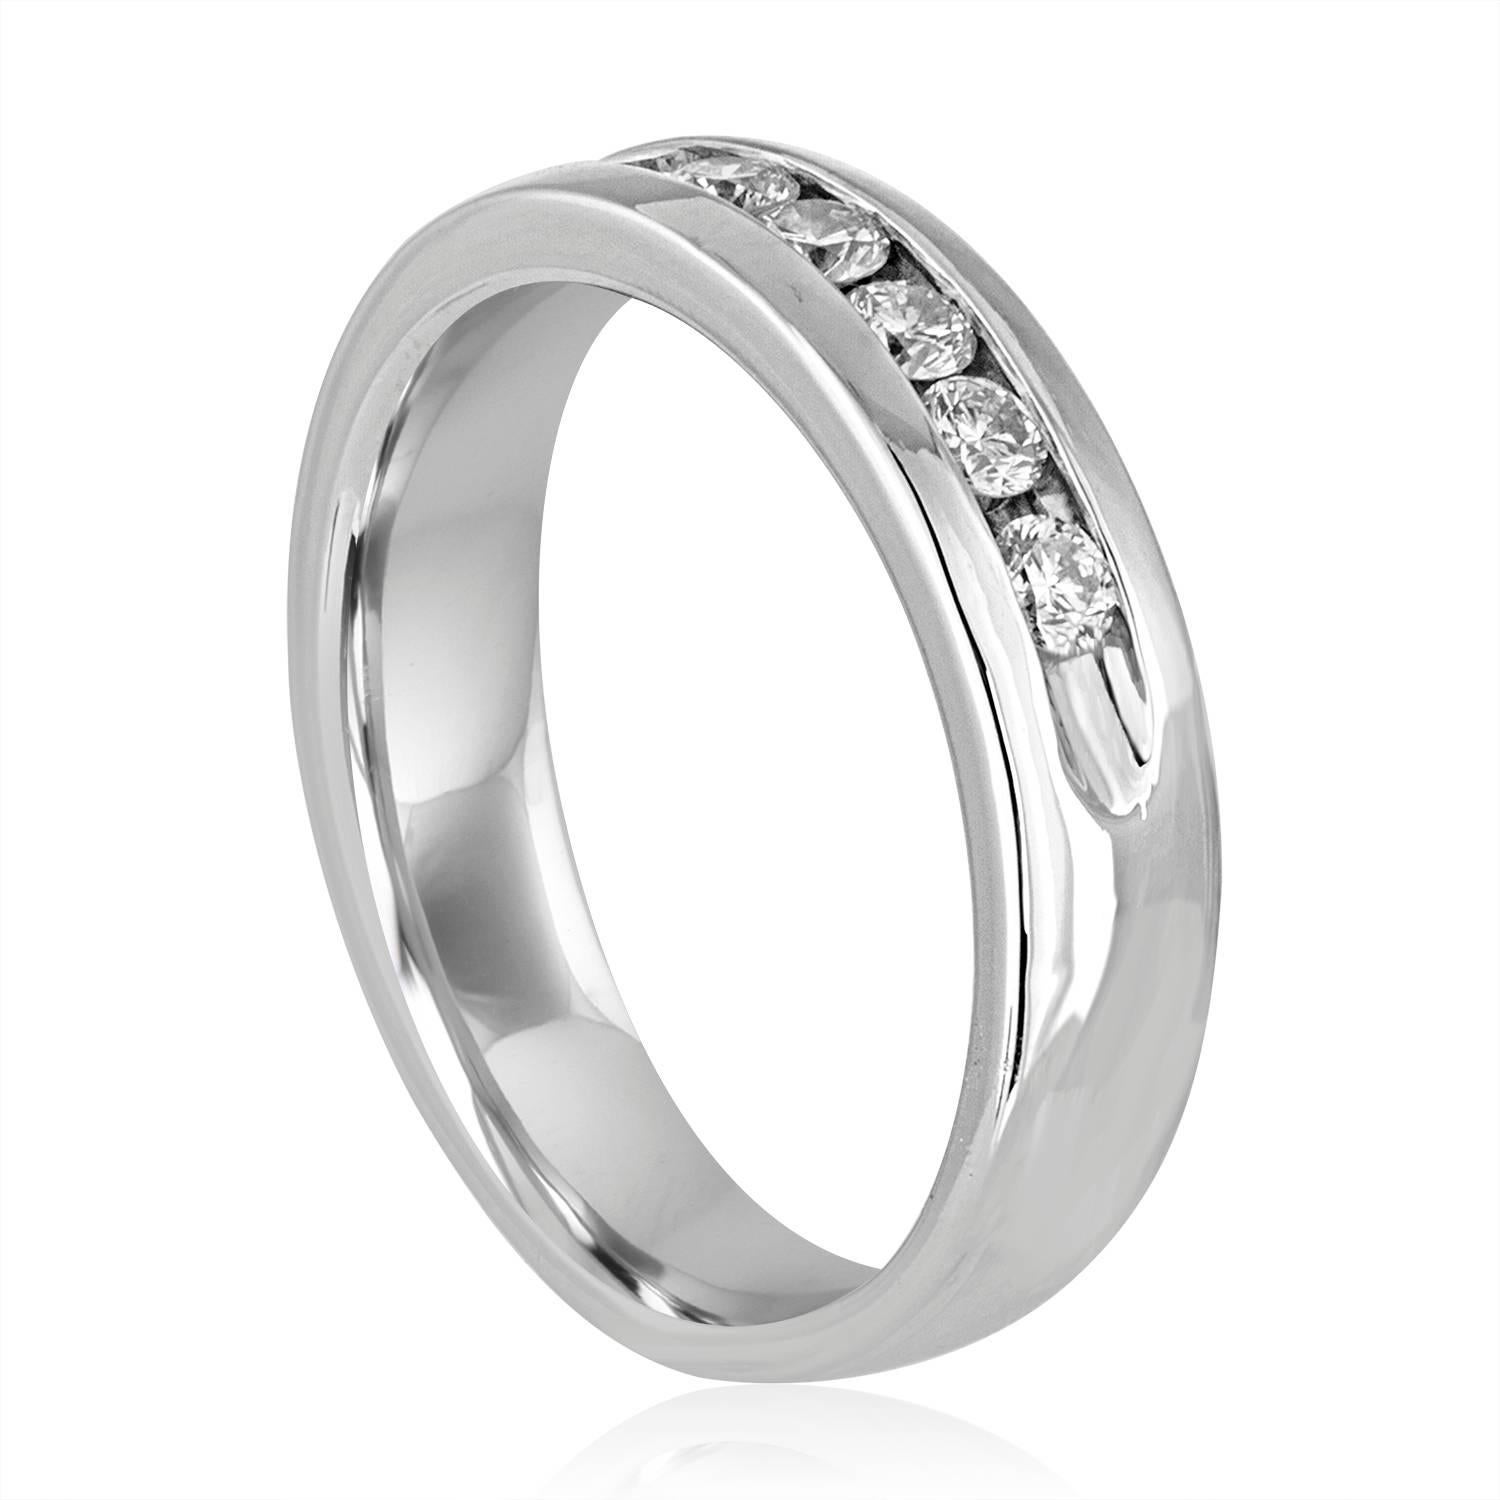 Diamant-Ehering für Männer
Der Ring ist aus Platin 950
Die rundgeschliffenen Diamanten sind 1.00Ct G/H VS
Der Ring ist eine Größe 12.5, sizable
Der Ring wiegt 16.4 Gramm